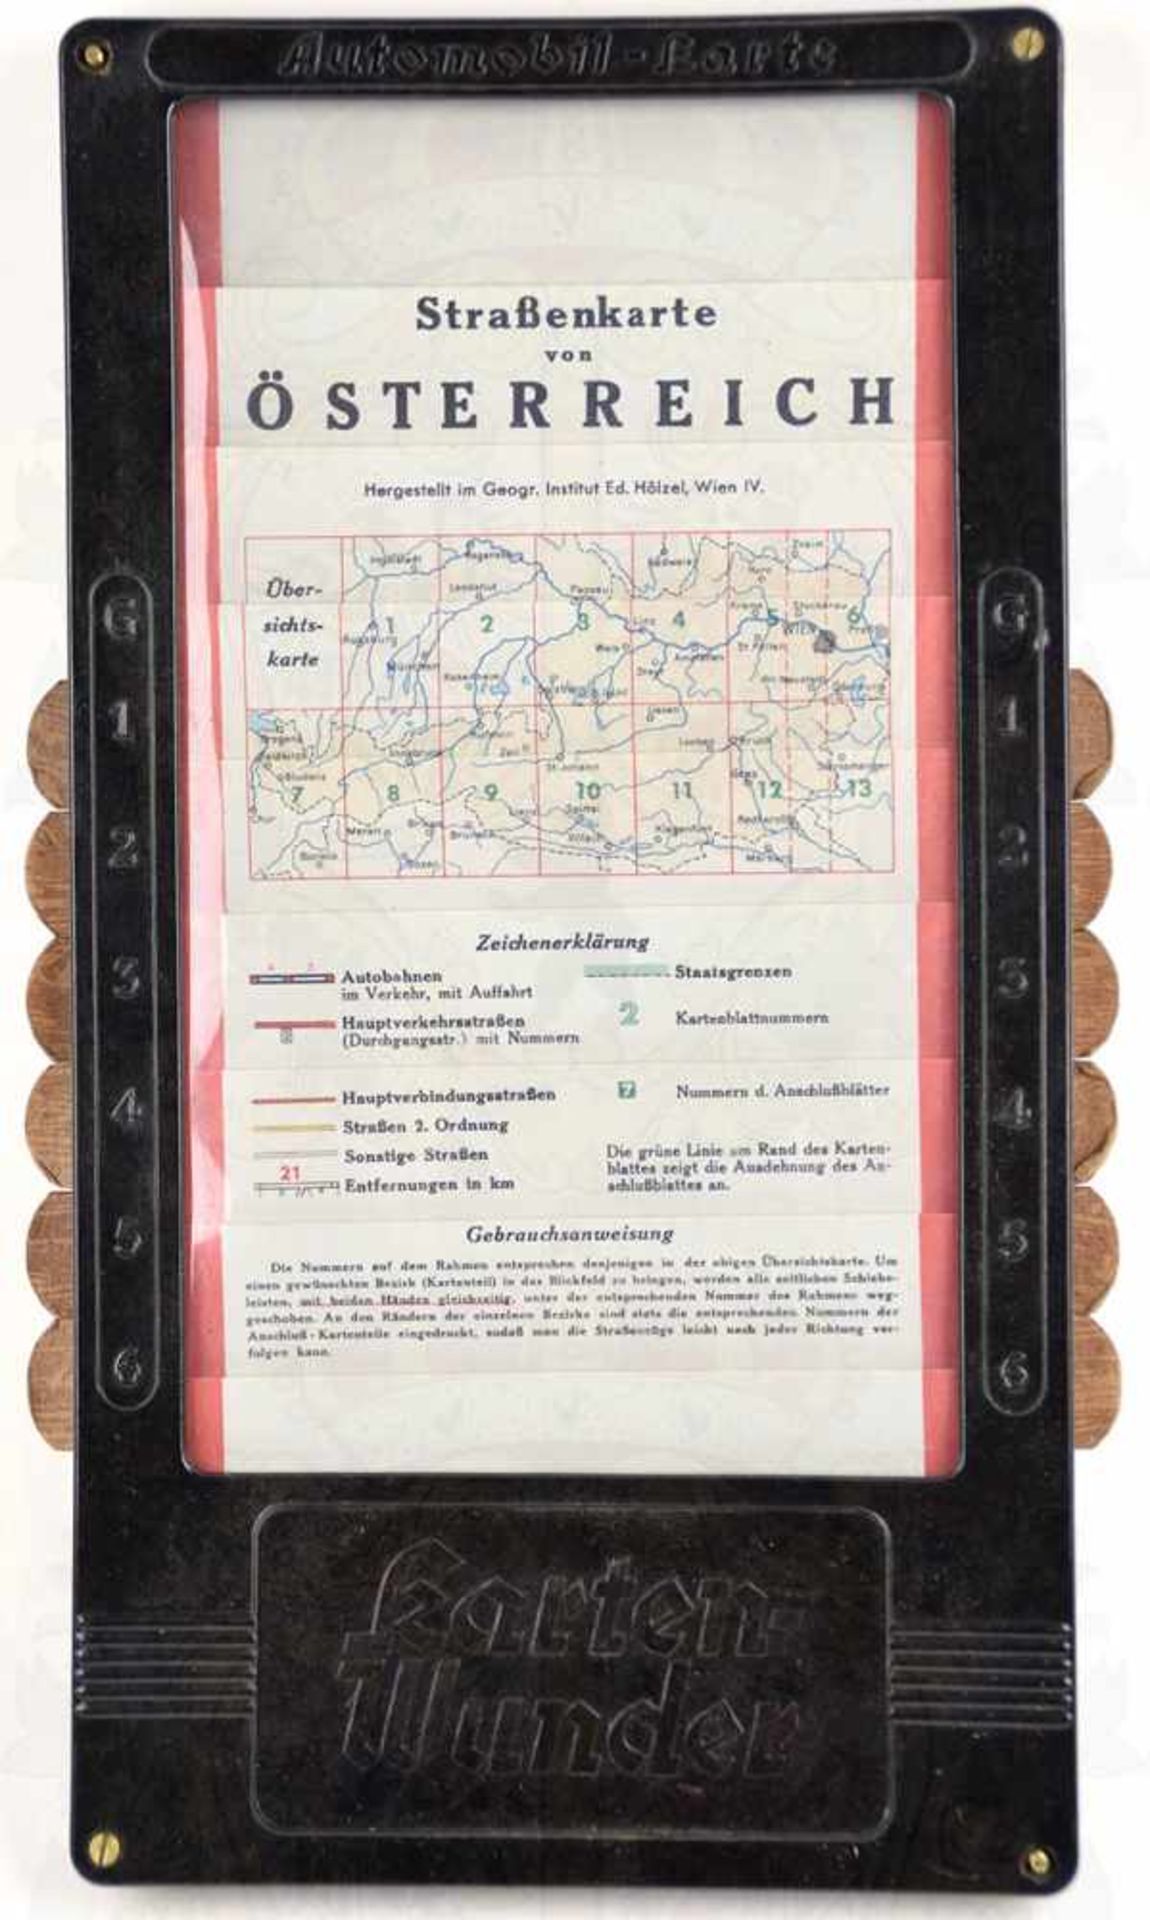 AUTOKARTE VON ÖSTERREICH, farbig, im Bakelit-Gehäuse mit Patent-Schiebefunktion, um 1937, 17,5x32,